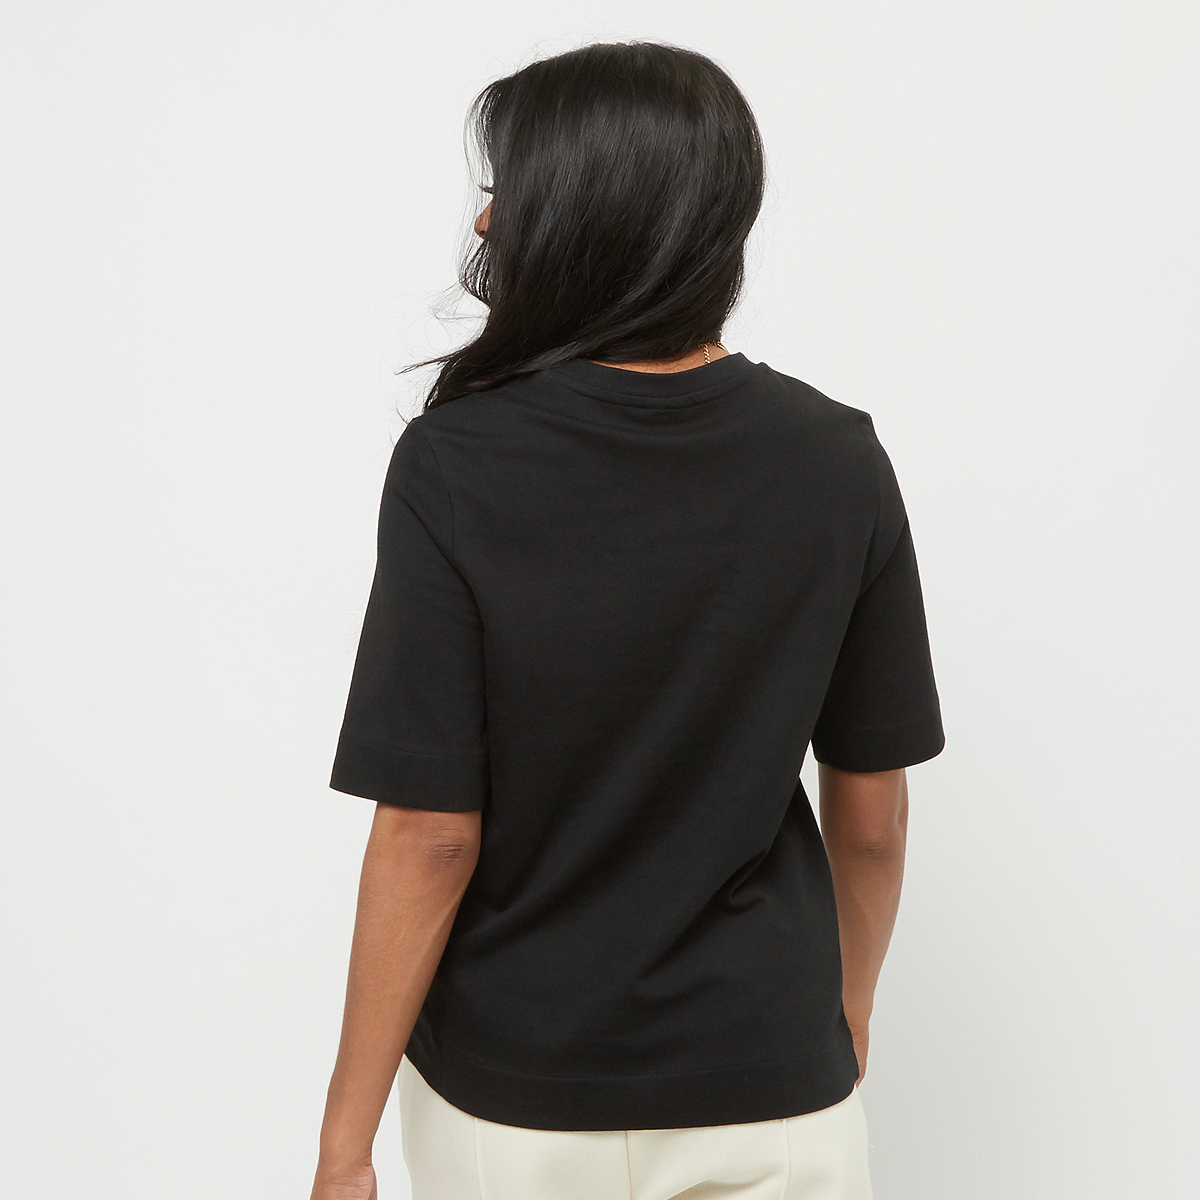 Urban Classics Ladies Classy Tee T-shirts Dames Black maat: S beschikbare maaten:S M L XL